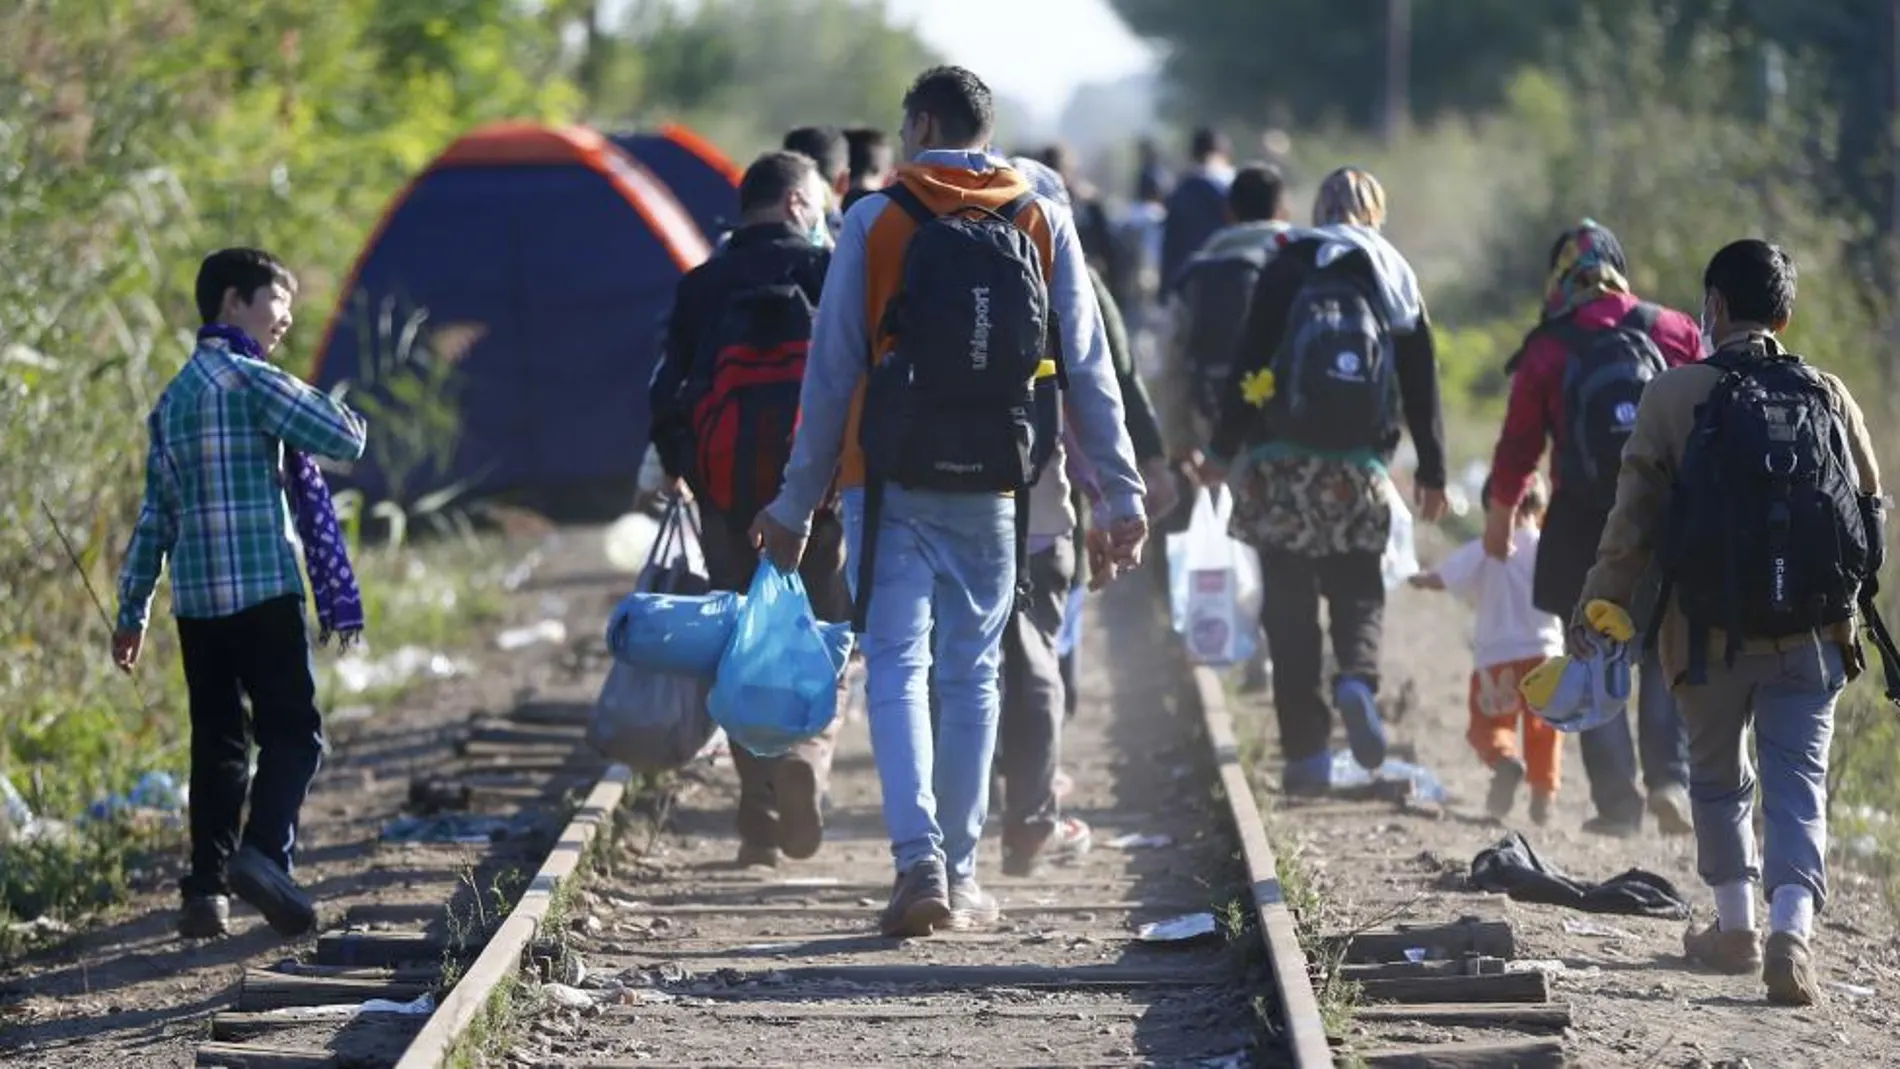 Refugiados caminan junto a las vías del tren en la frontera entre Serbia y Hungría.